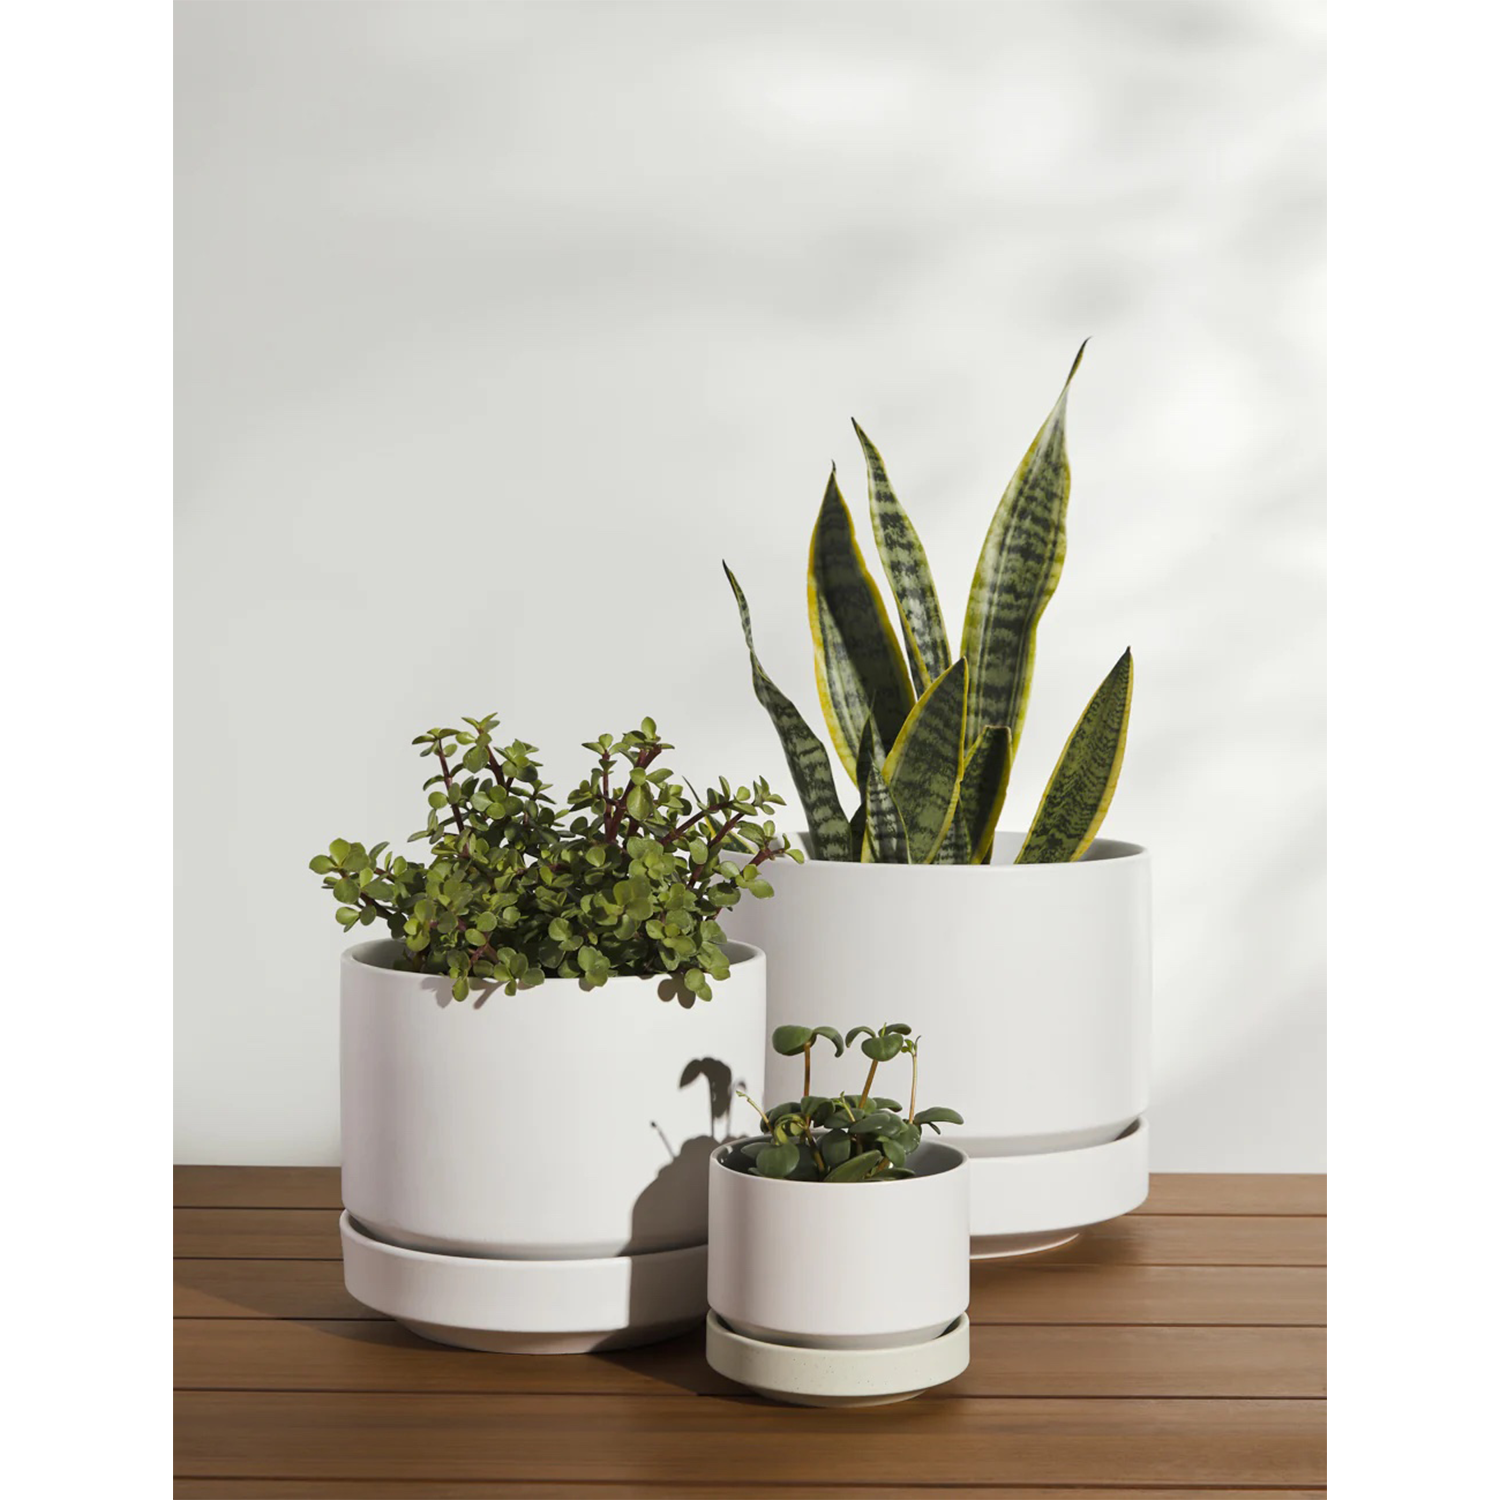 Ceramic Indoor / Outdoor Planter by LBE Design - White / 4" Diameter Ceramic Indoor / Outdoor Planter By LBE Design